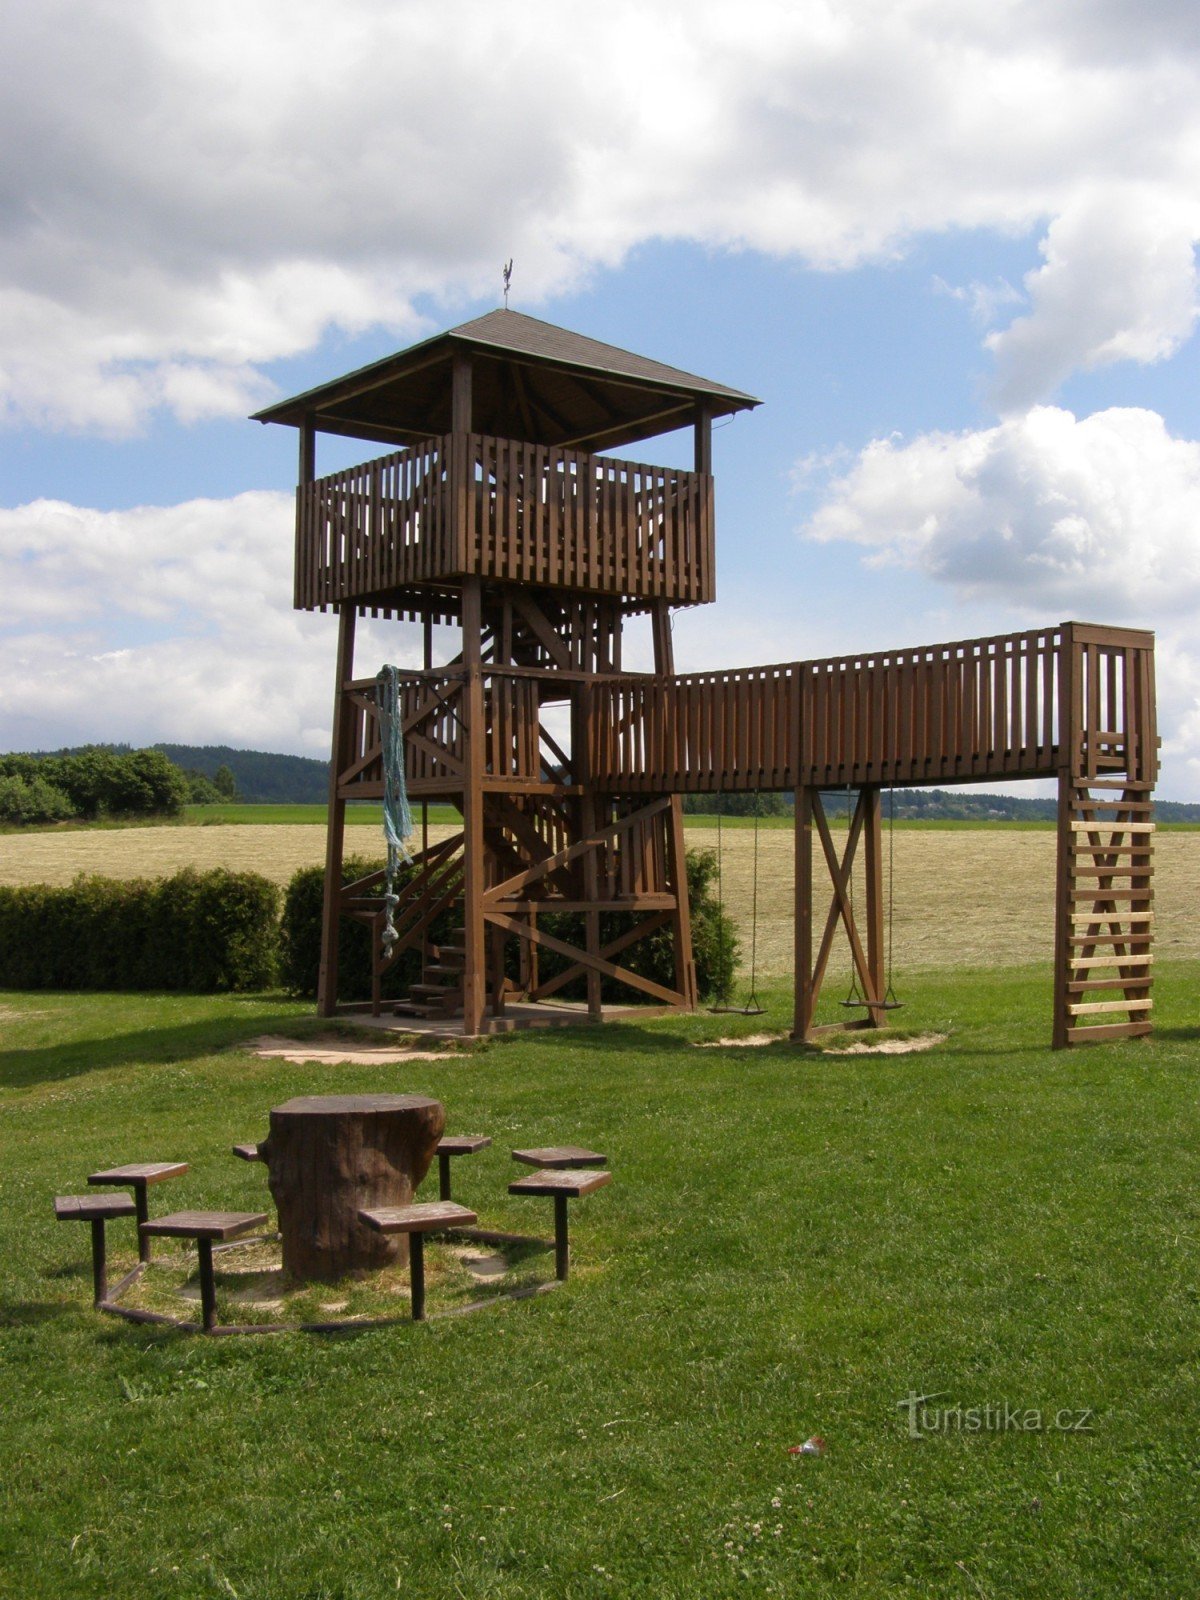 Lookout tower near Rtyn in Podkrkonoší